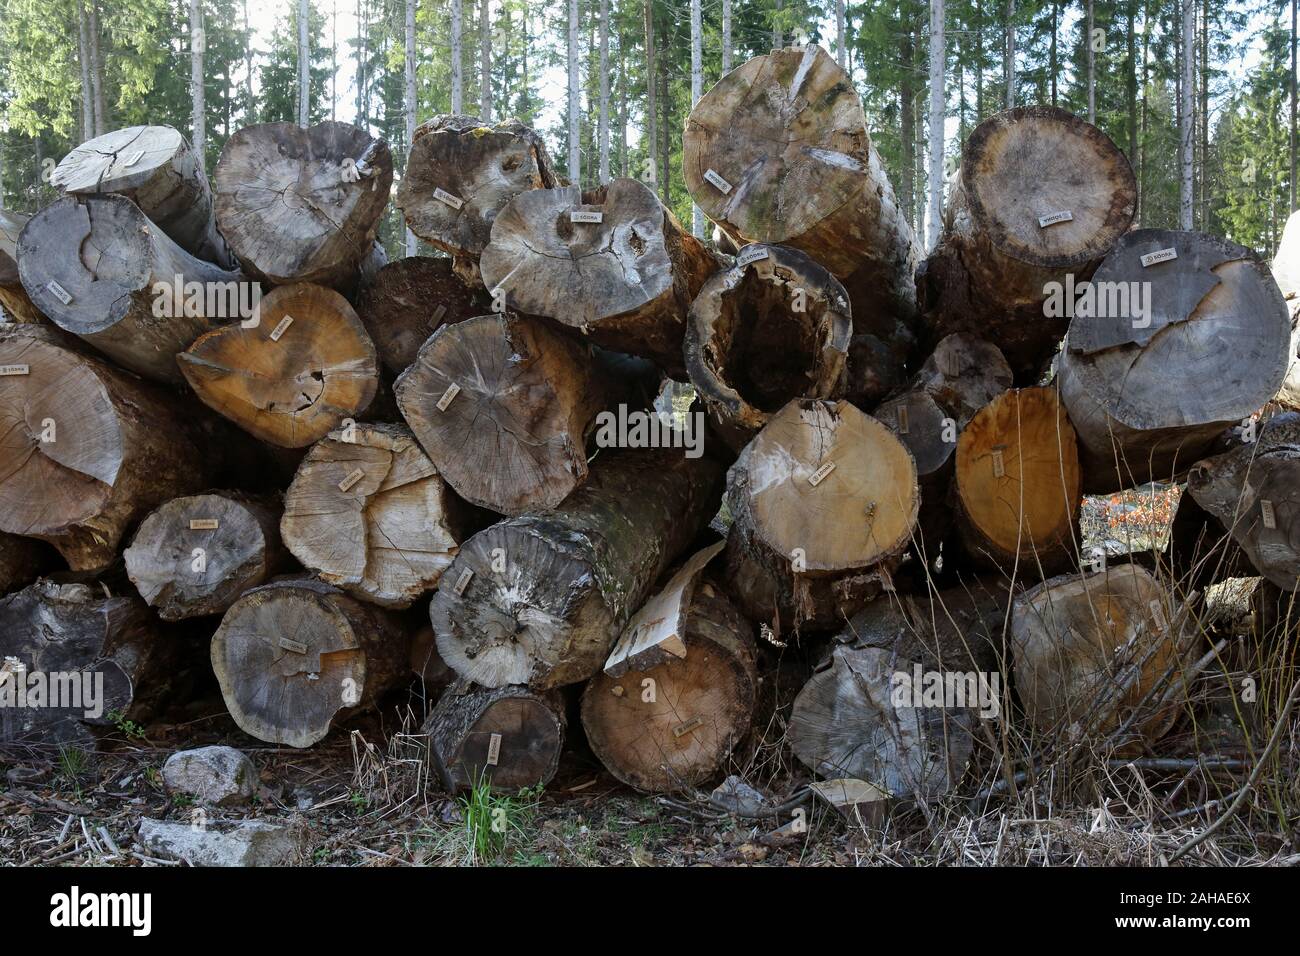 14.04.2017, Hovmantorp, Kronobergs laen, Suède - les troncs des arbres de la société forestière Soedra sont prêts pour la collecte. 00S170414D060CAROEX.JPG [MODE Banque D'Images